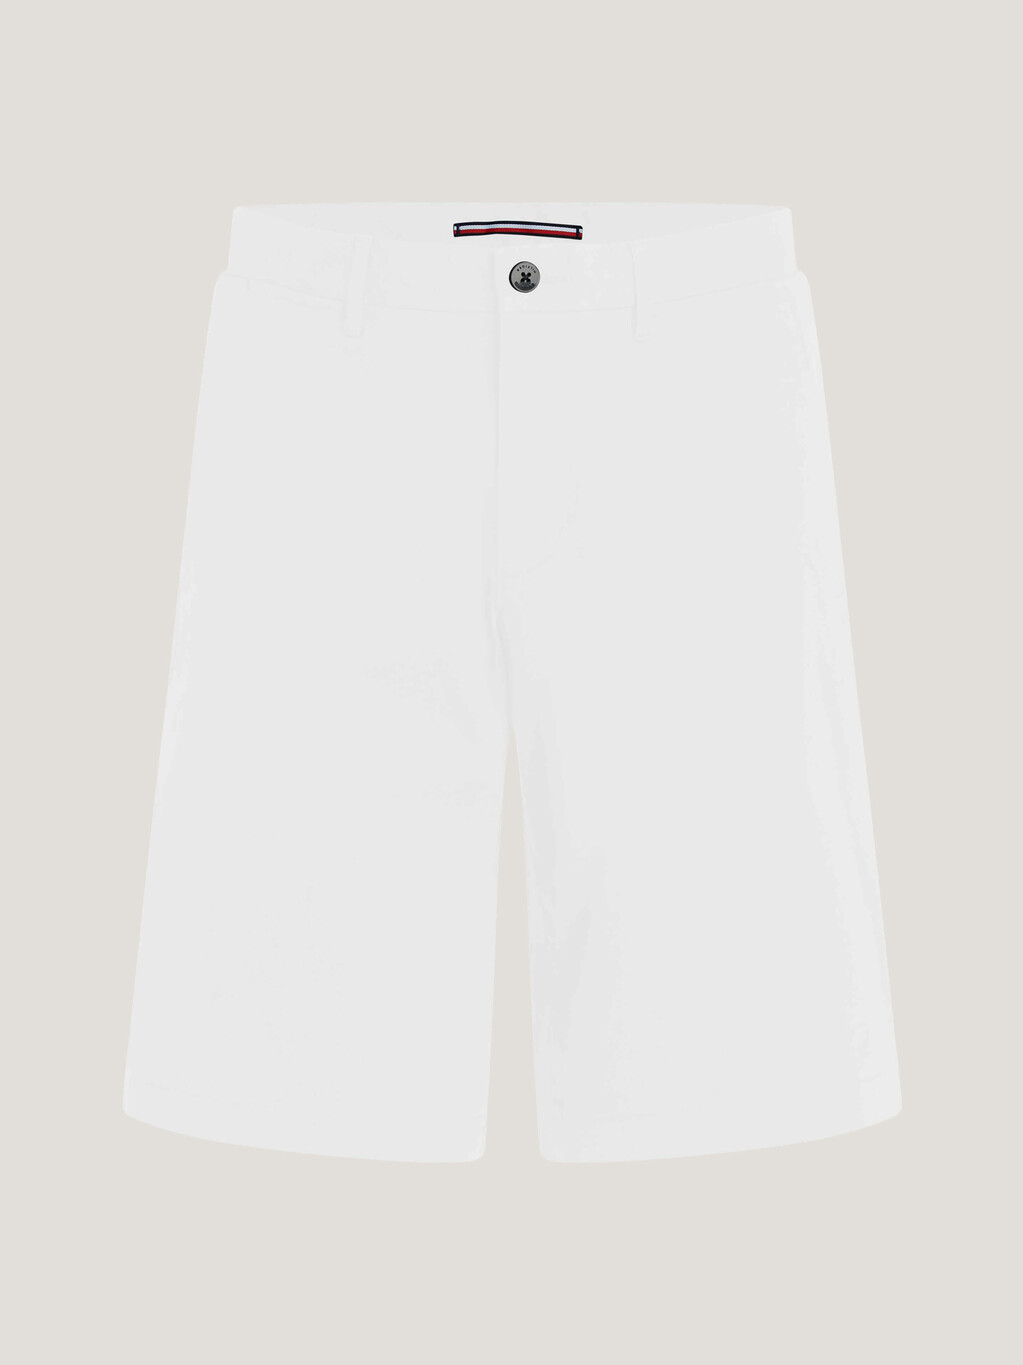 Essential Brooklyn Twill Shorts, White, hi-res